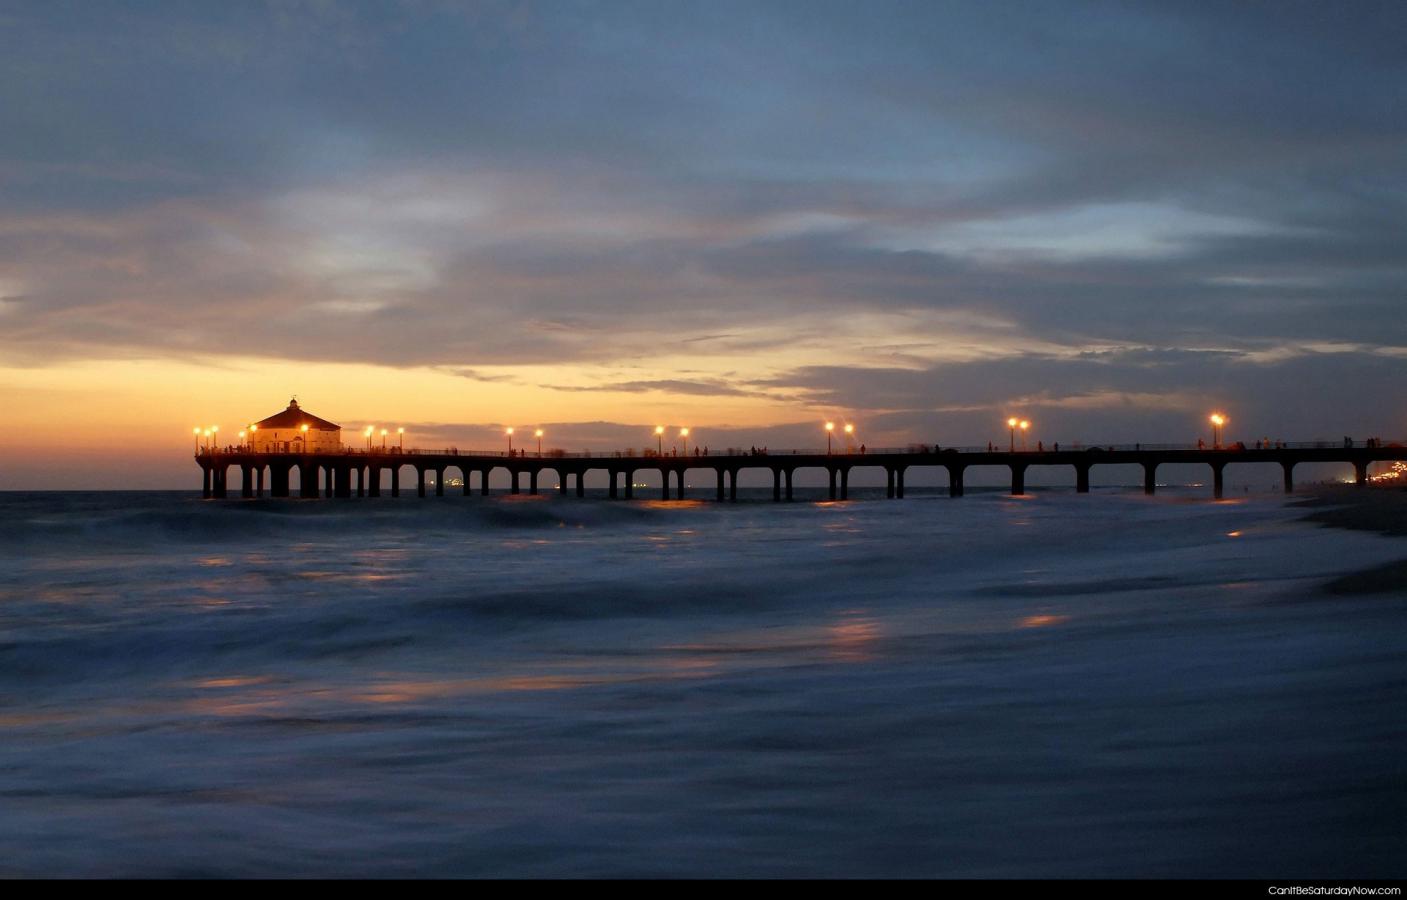 Sunset pier - a long pier at sunset